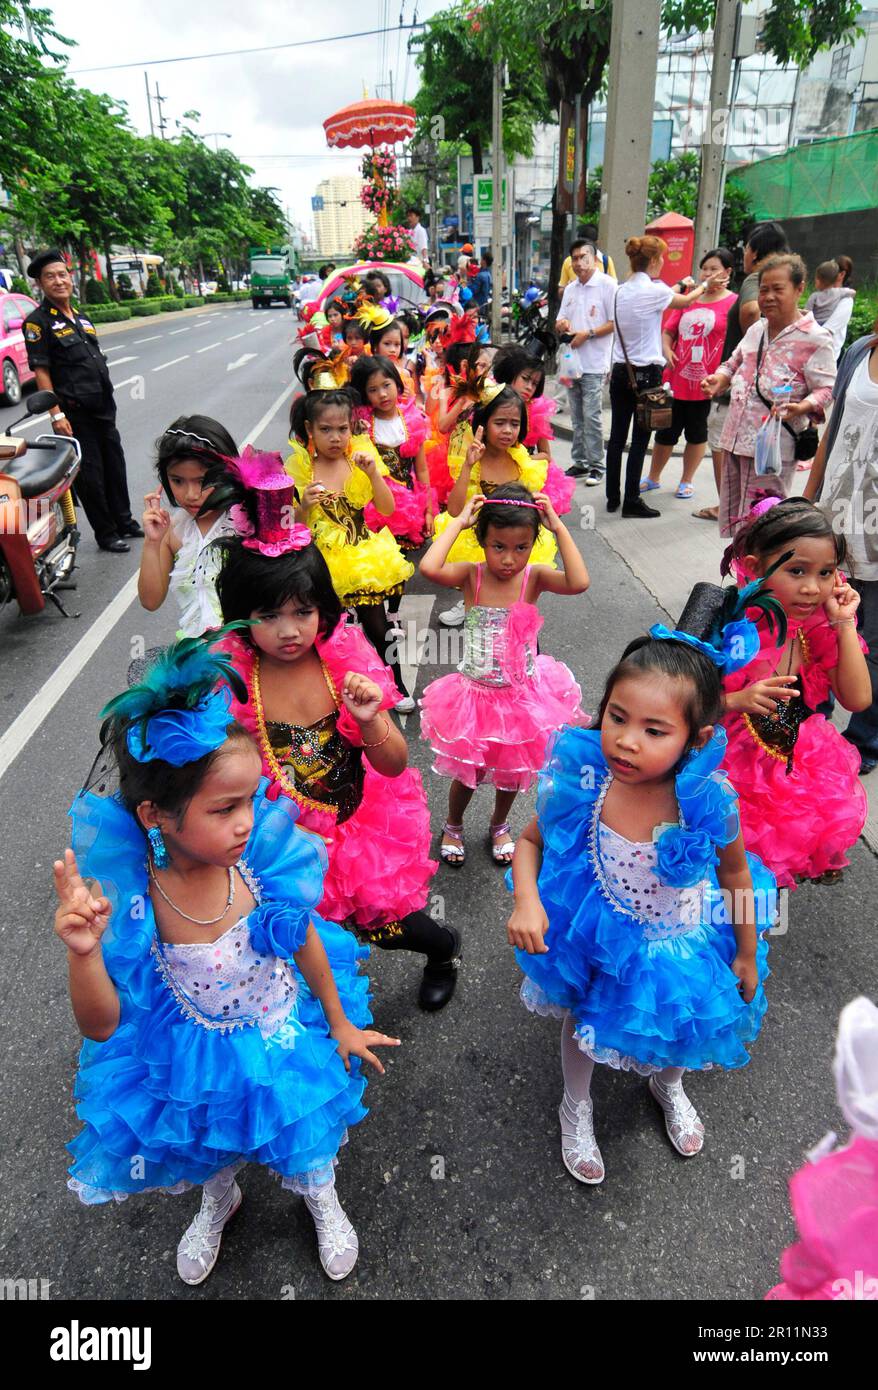 Eine farbenfrohe Parade entlang der Charoen Nakhon Rd in Bangkok, Thailand. Stockfoto